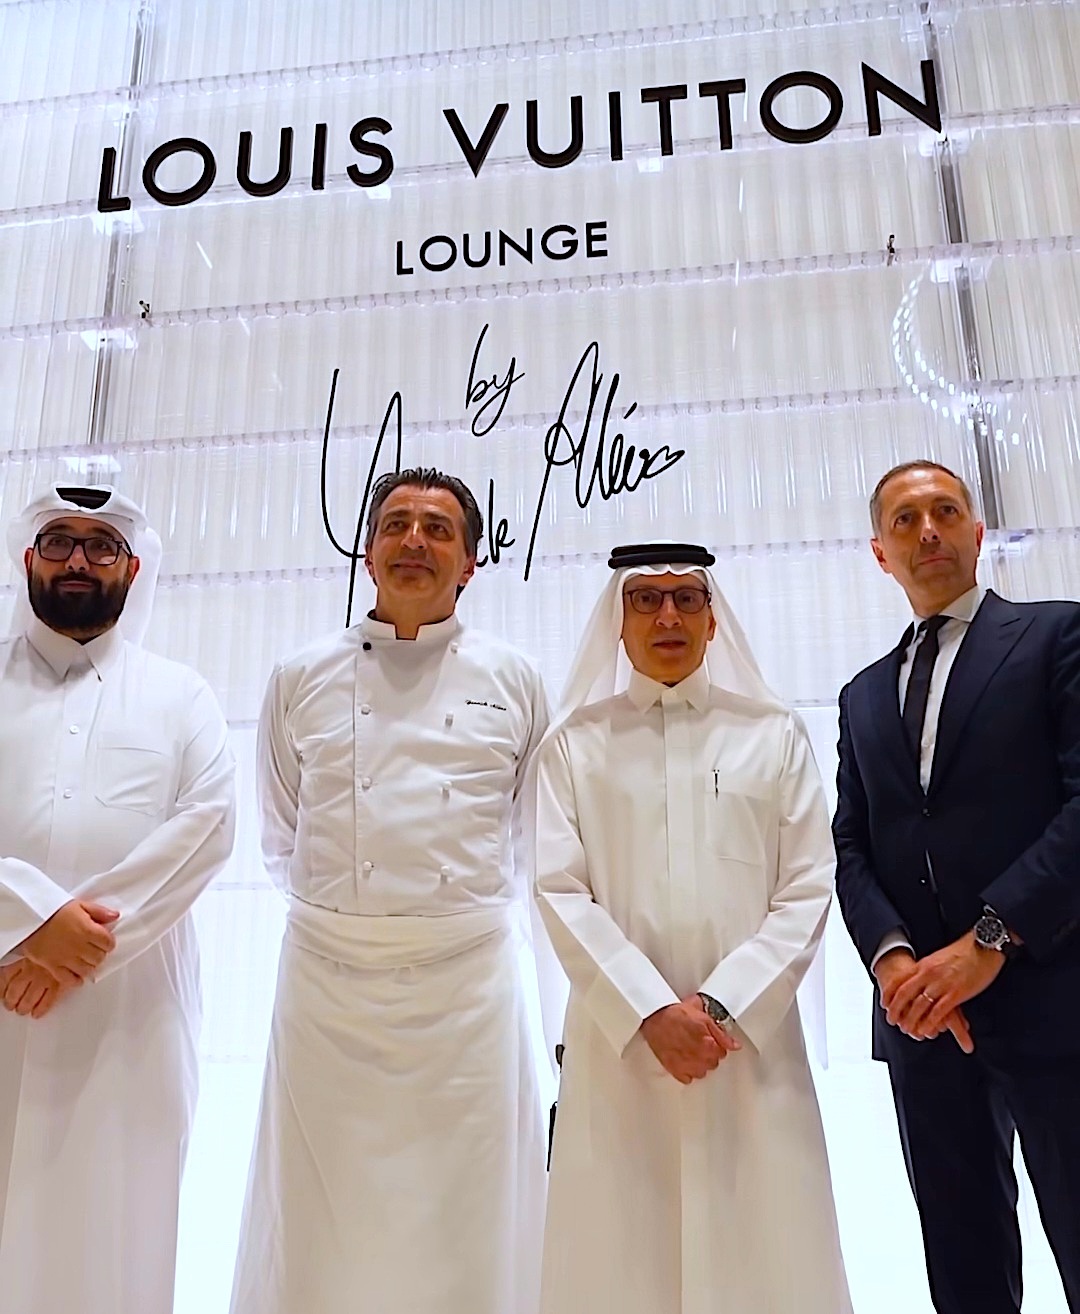 Louis Vuitton Lounge by Yannick Alléno Archives - Food & Sens